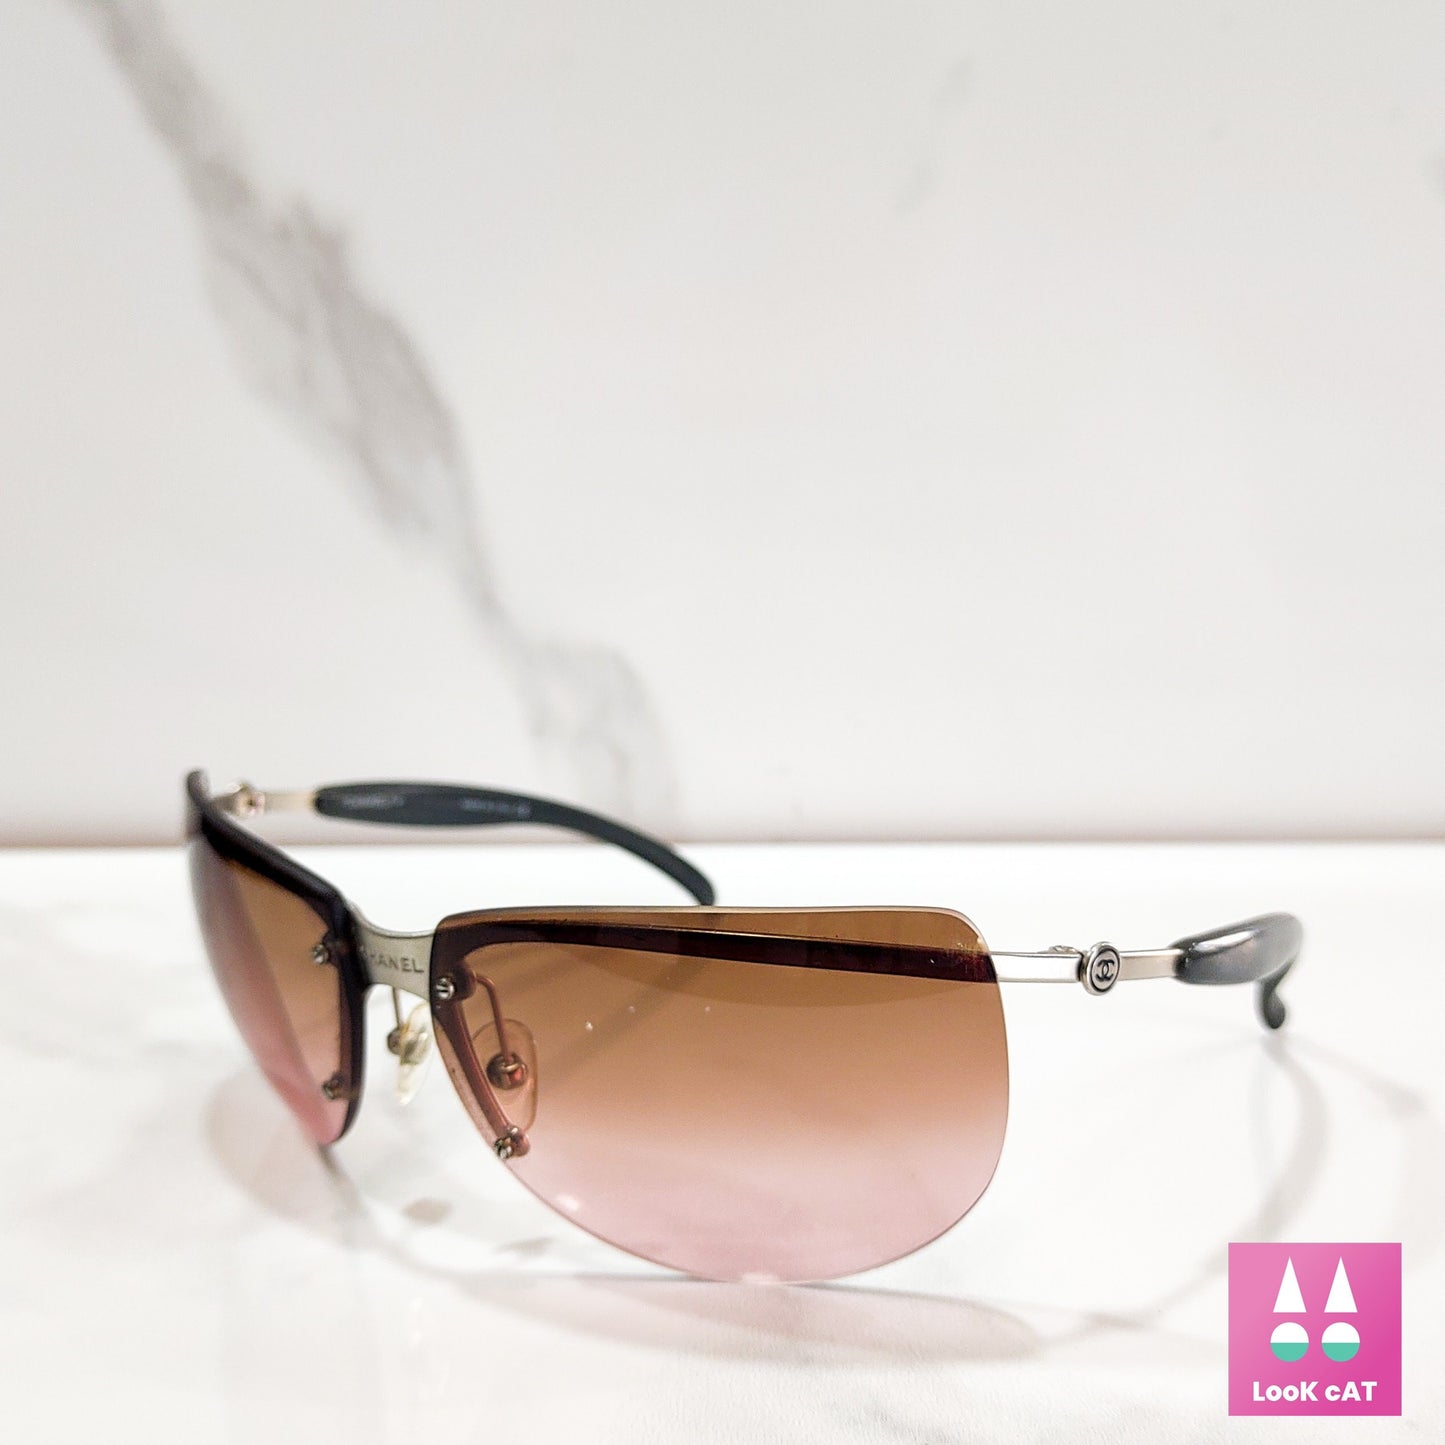 Occhiali da sole Chanel modello 4010 con scudo avvolgente lunetta tonalità brille y2k